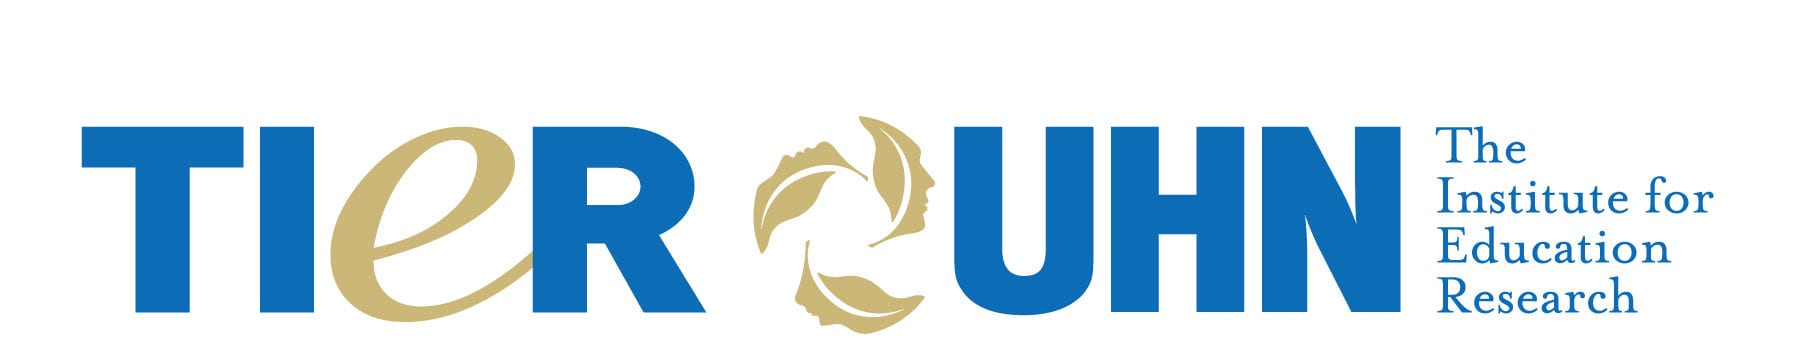 TIER-logo-full-2019